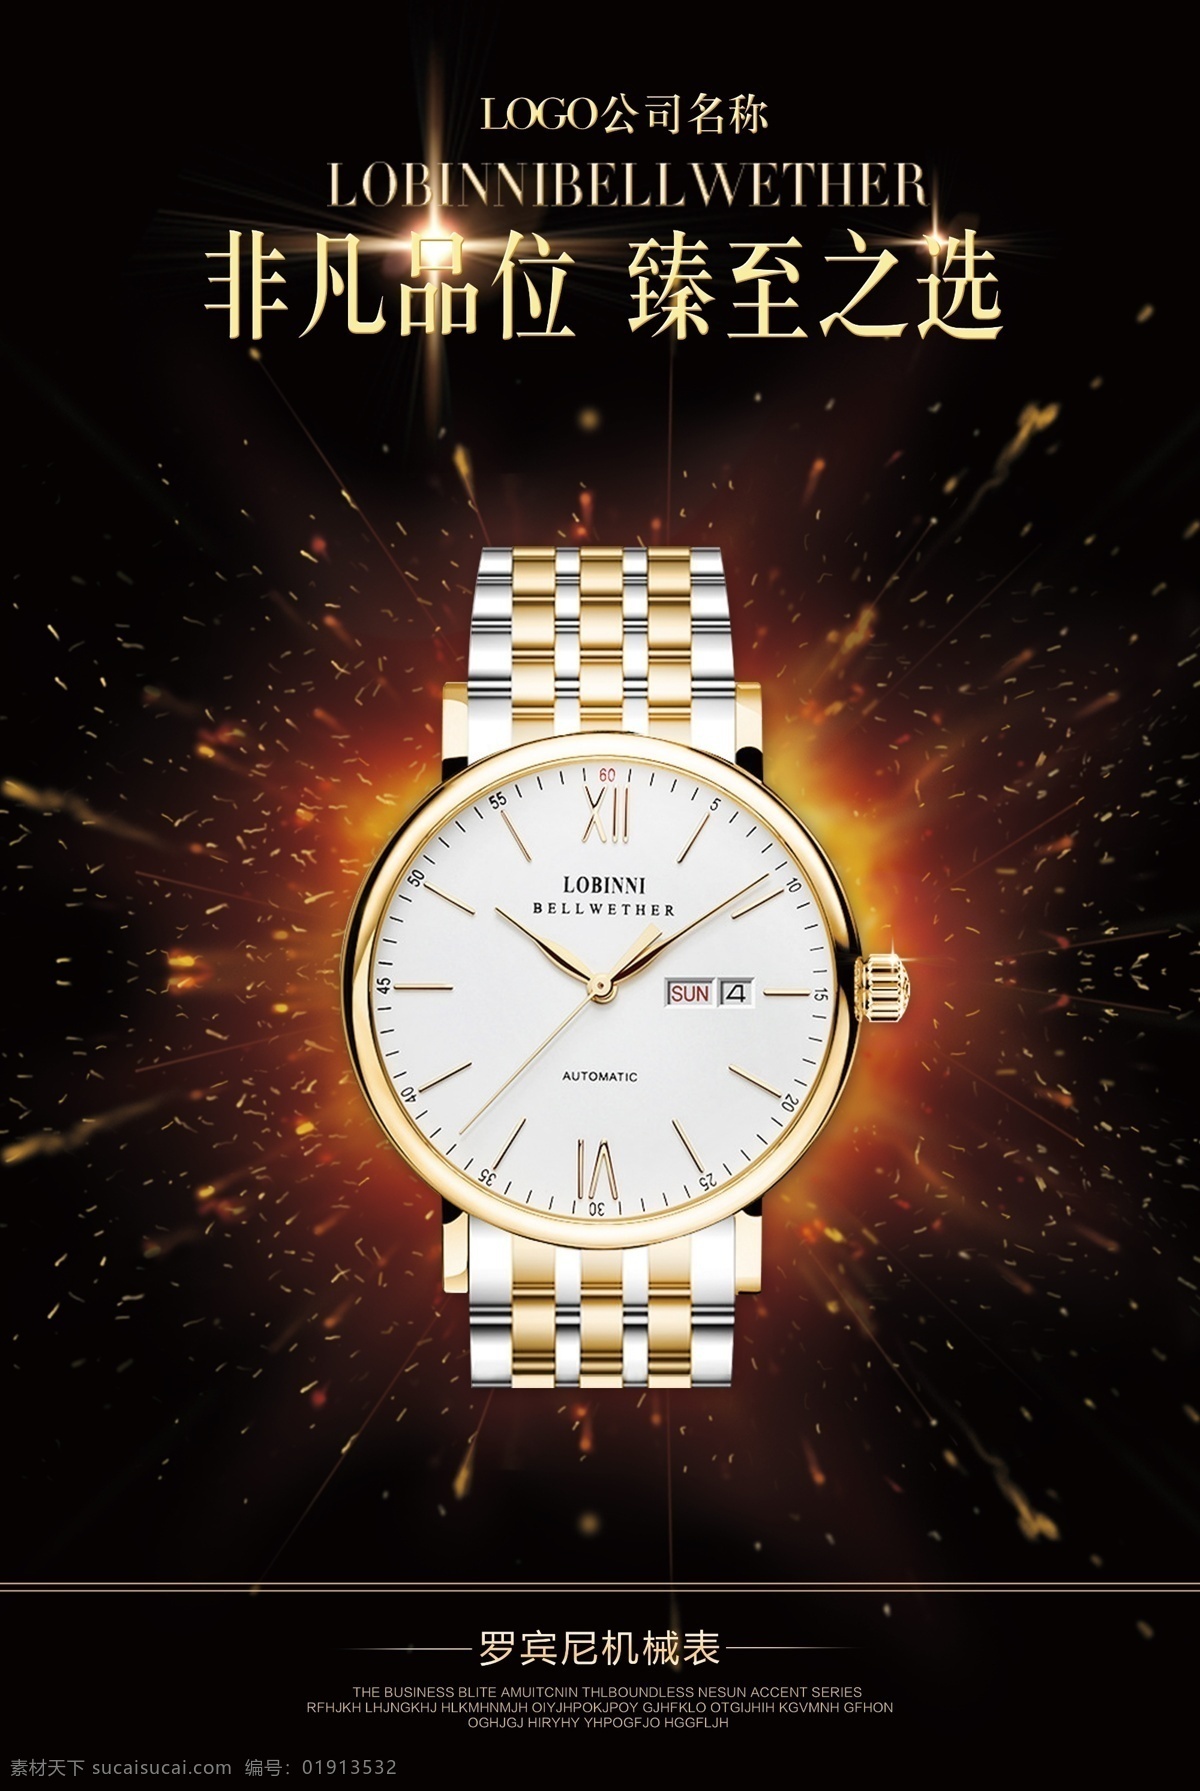 时尚手表 手表海报 品质非凡 手表广告 精工手表 手表 精工 表 名表 手表设计 手表模版 手表广告模版 饰品 高档手表 手表广告设计 情侣手表